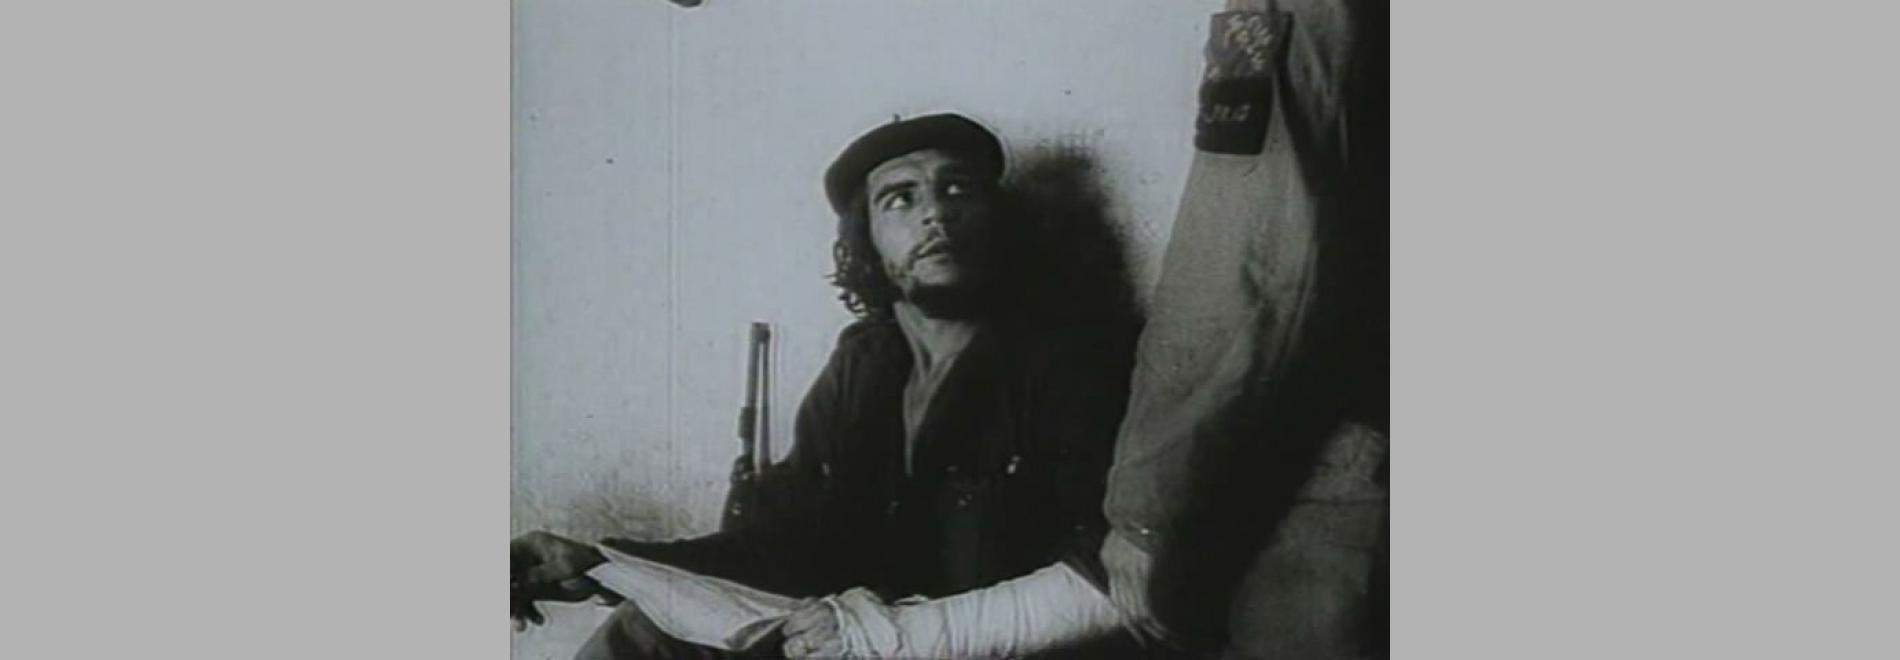 Hasta la victoria siempre (Santiago Álvarez, 1967)